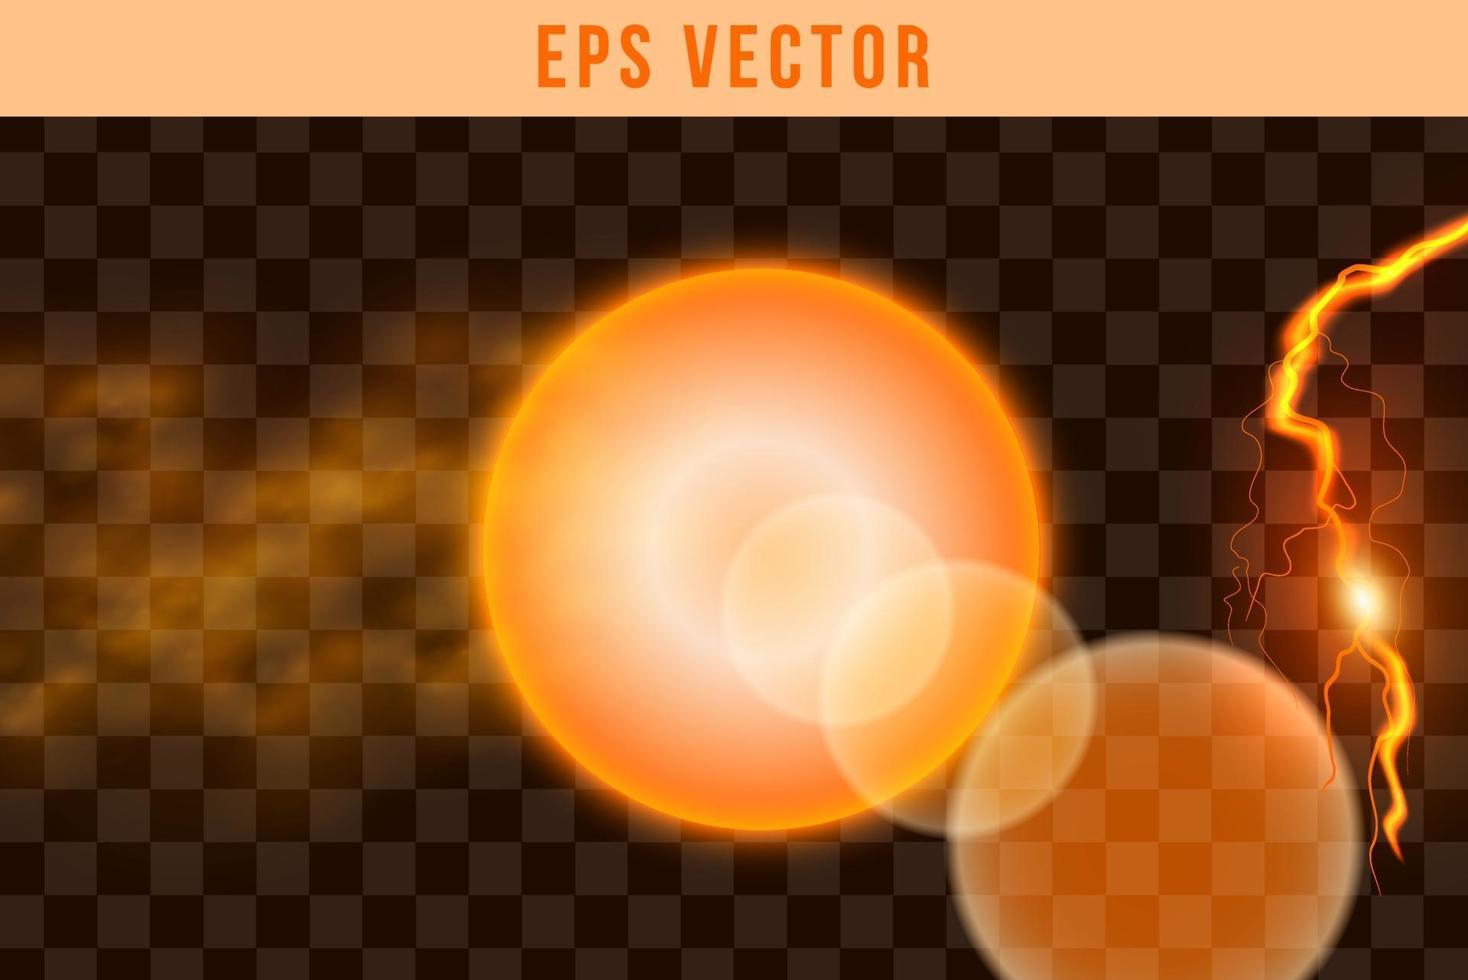 Objekt för form för ljus för form för eps-vektor för form 3d vektor